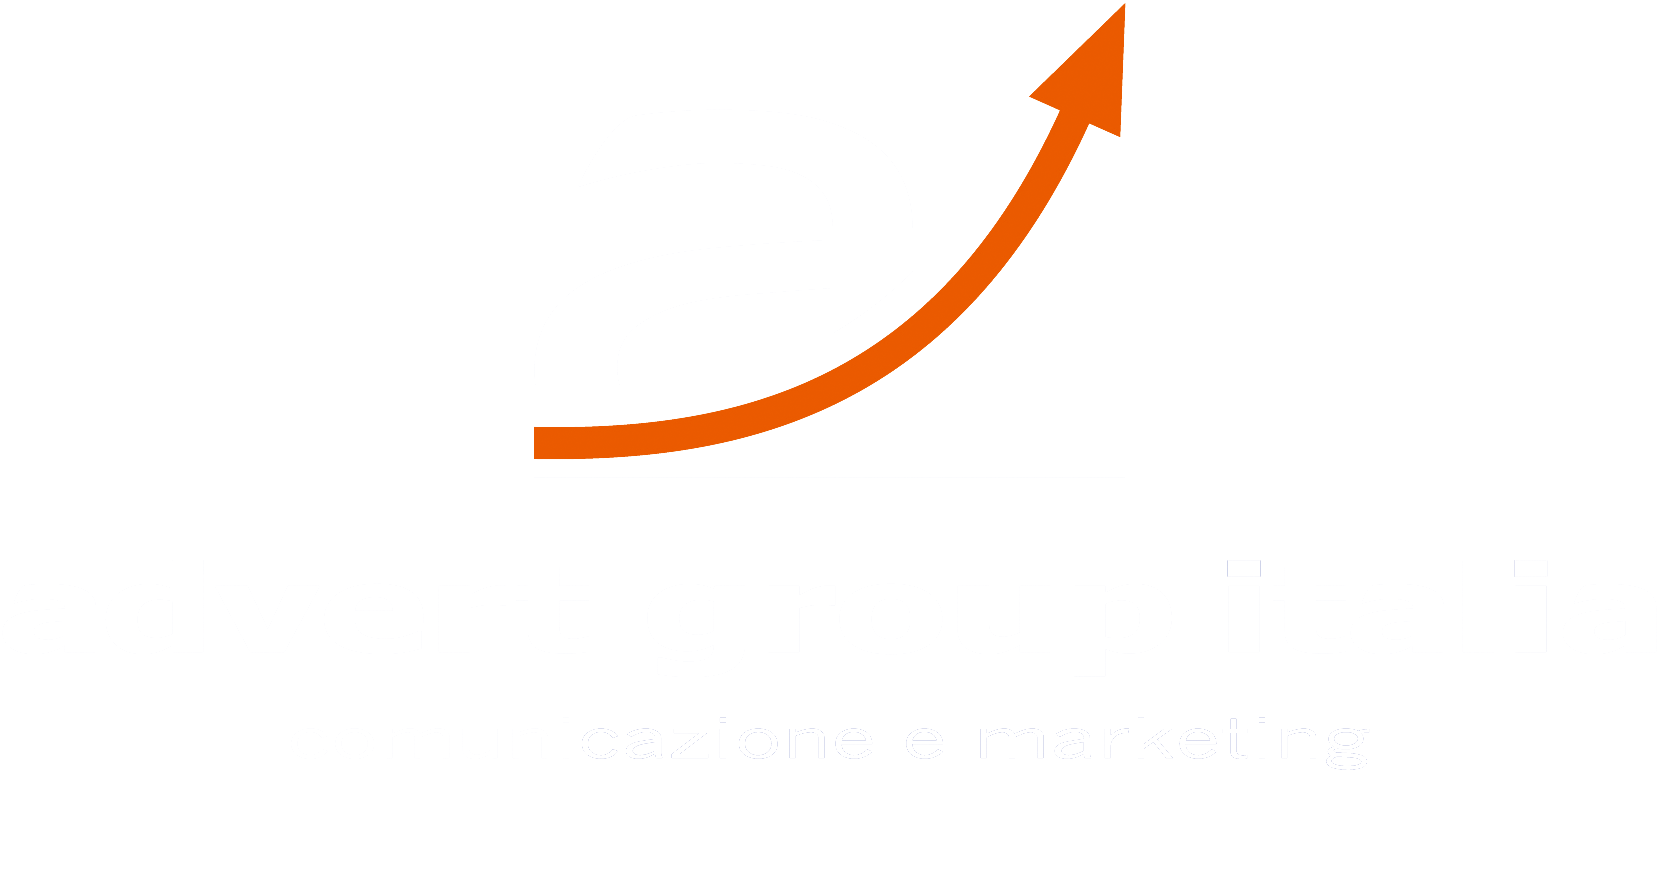 advert group italia : approccio scientifico, più risultati | La prima agenzia di comunicazione con metodo scientifico.